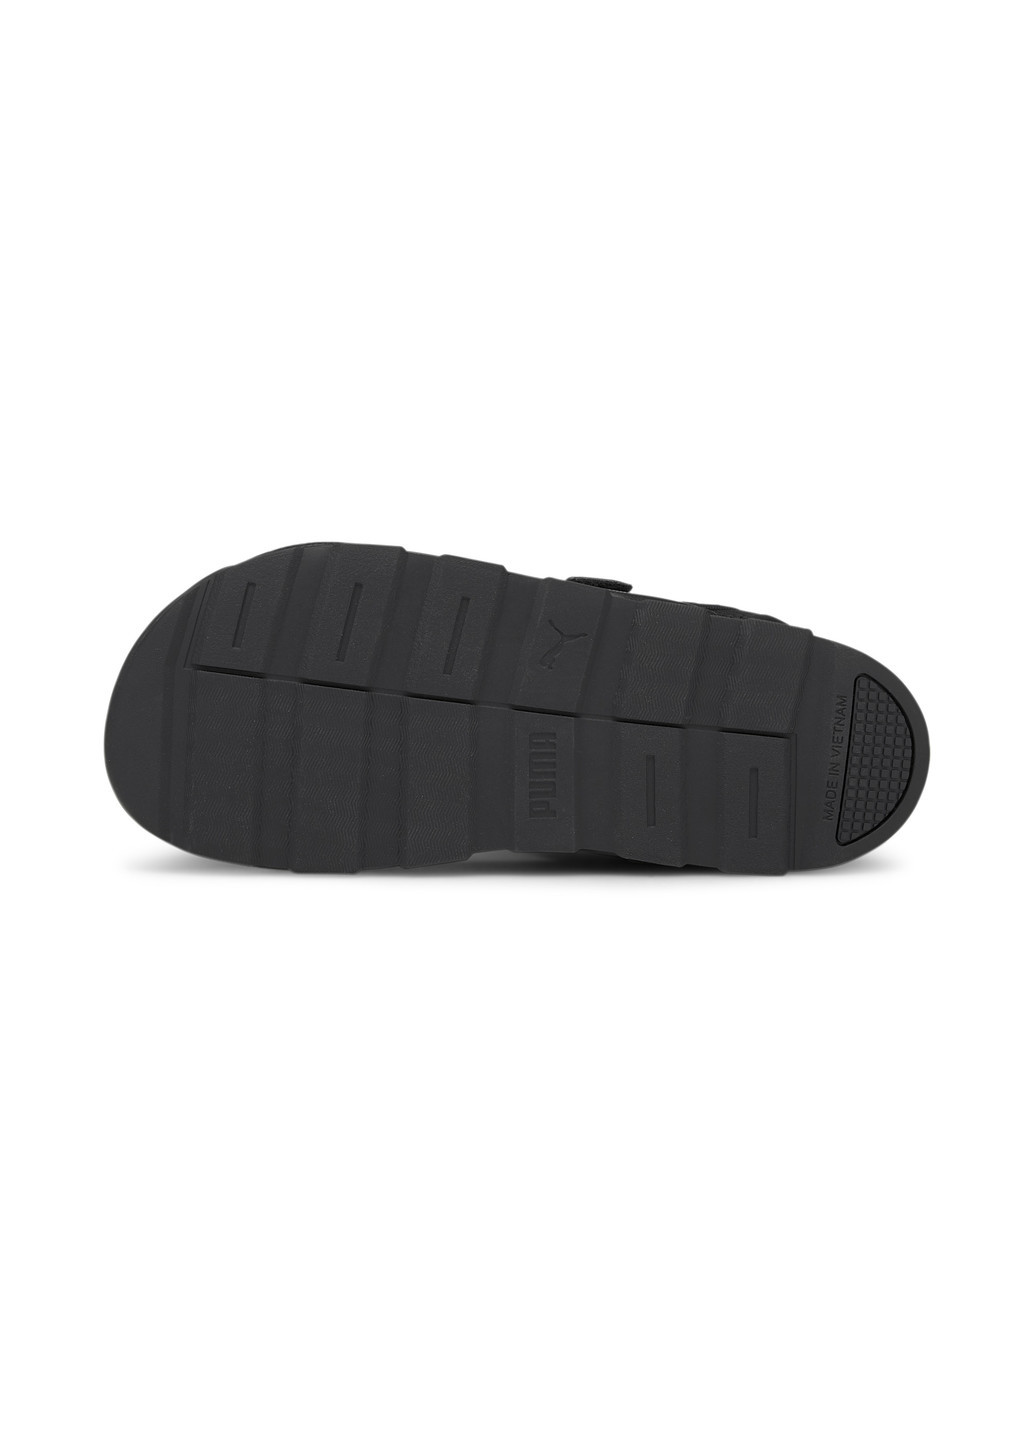 Сандалии RS Sandals Puma однотонные чёрные спортивные